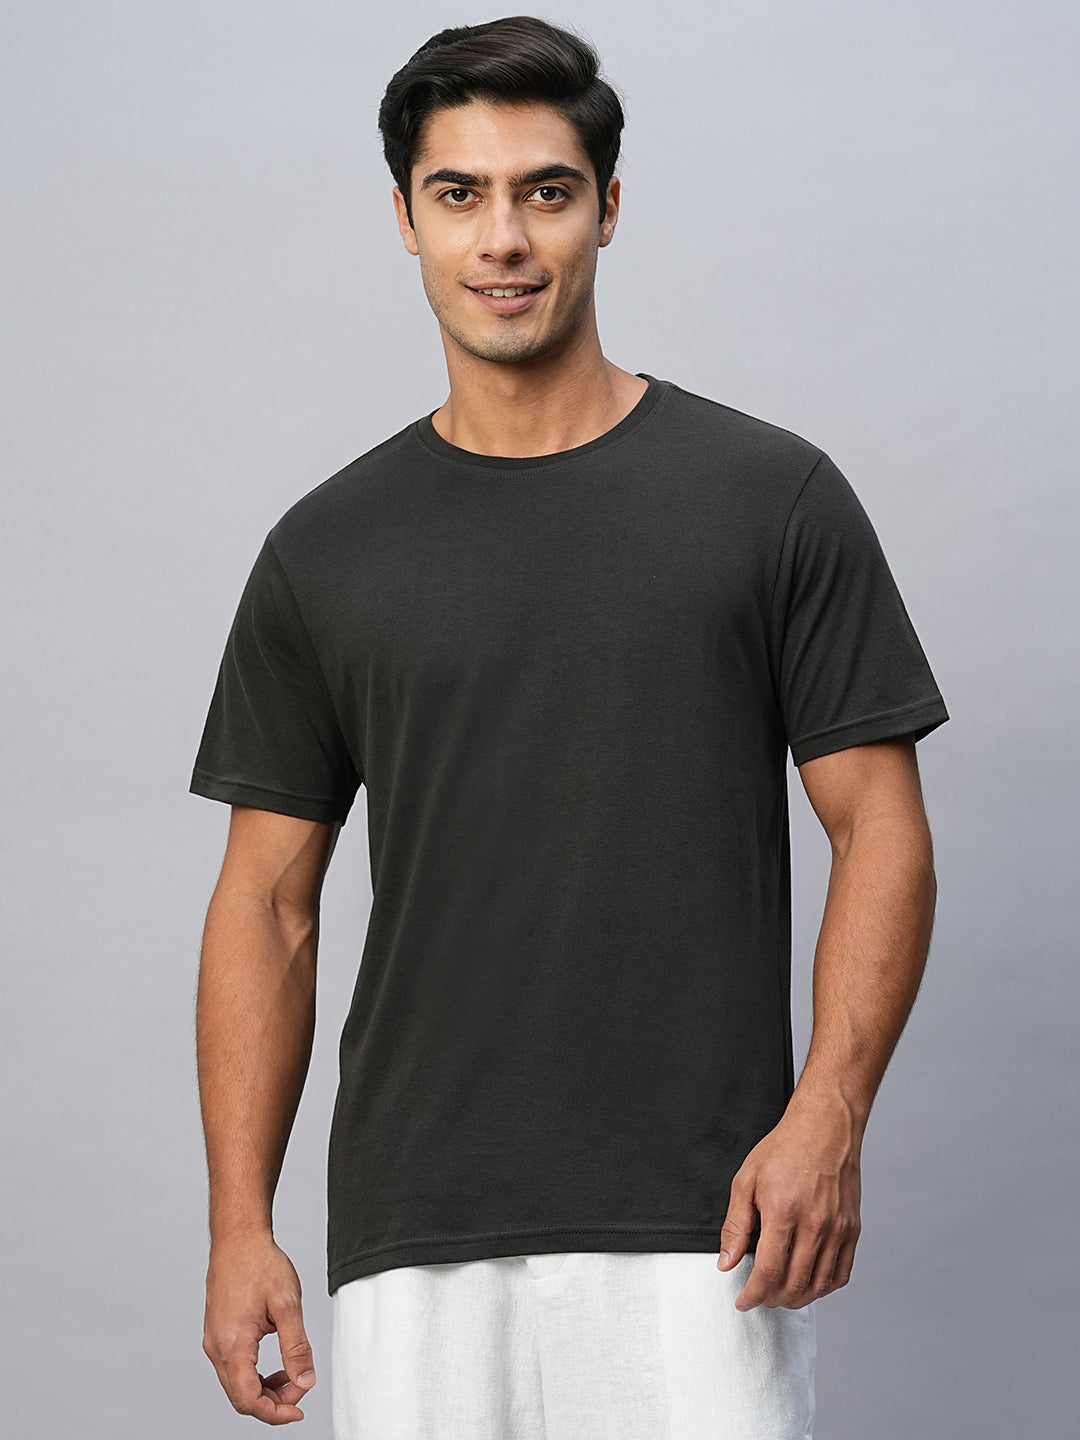 Men's Dark Grey Cotton Regular Fit Tshirts